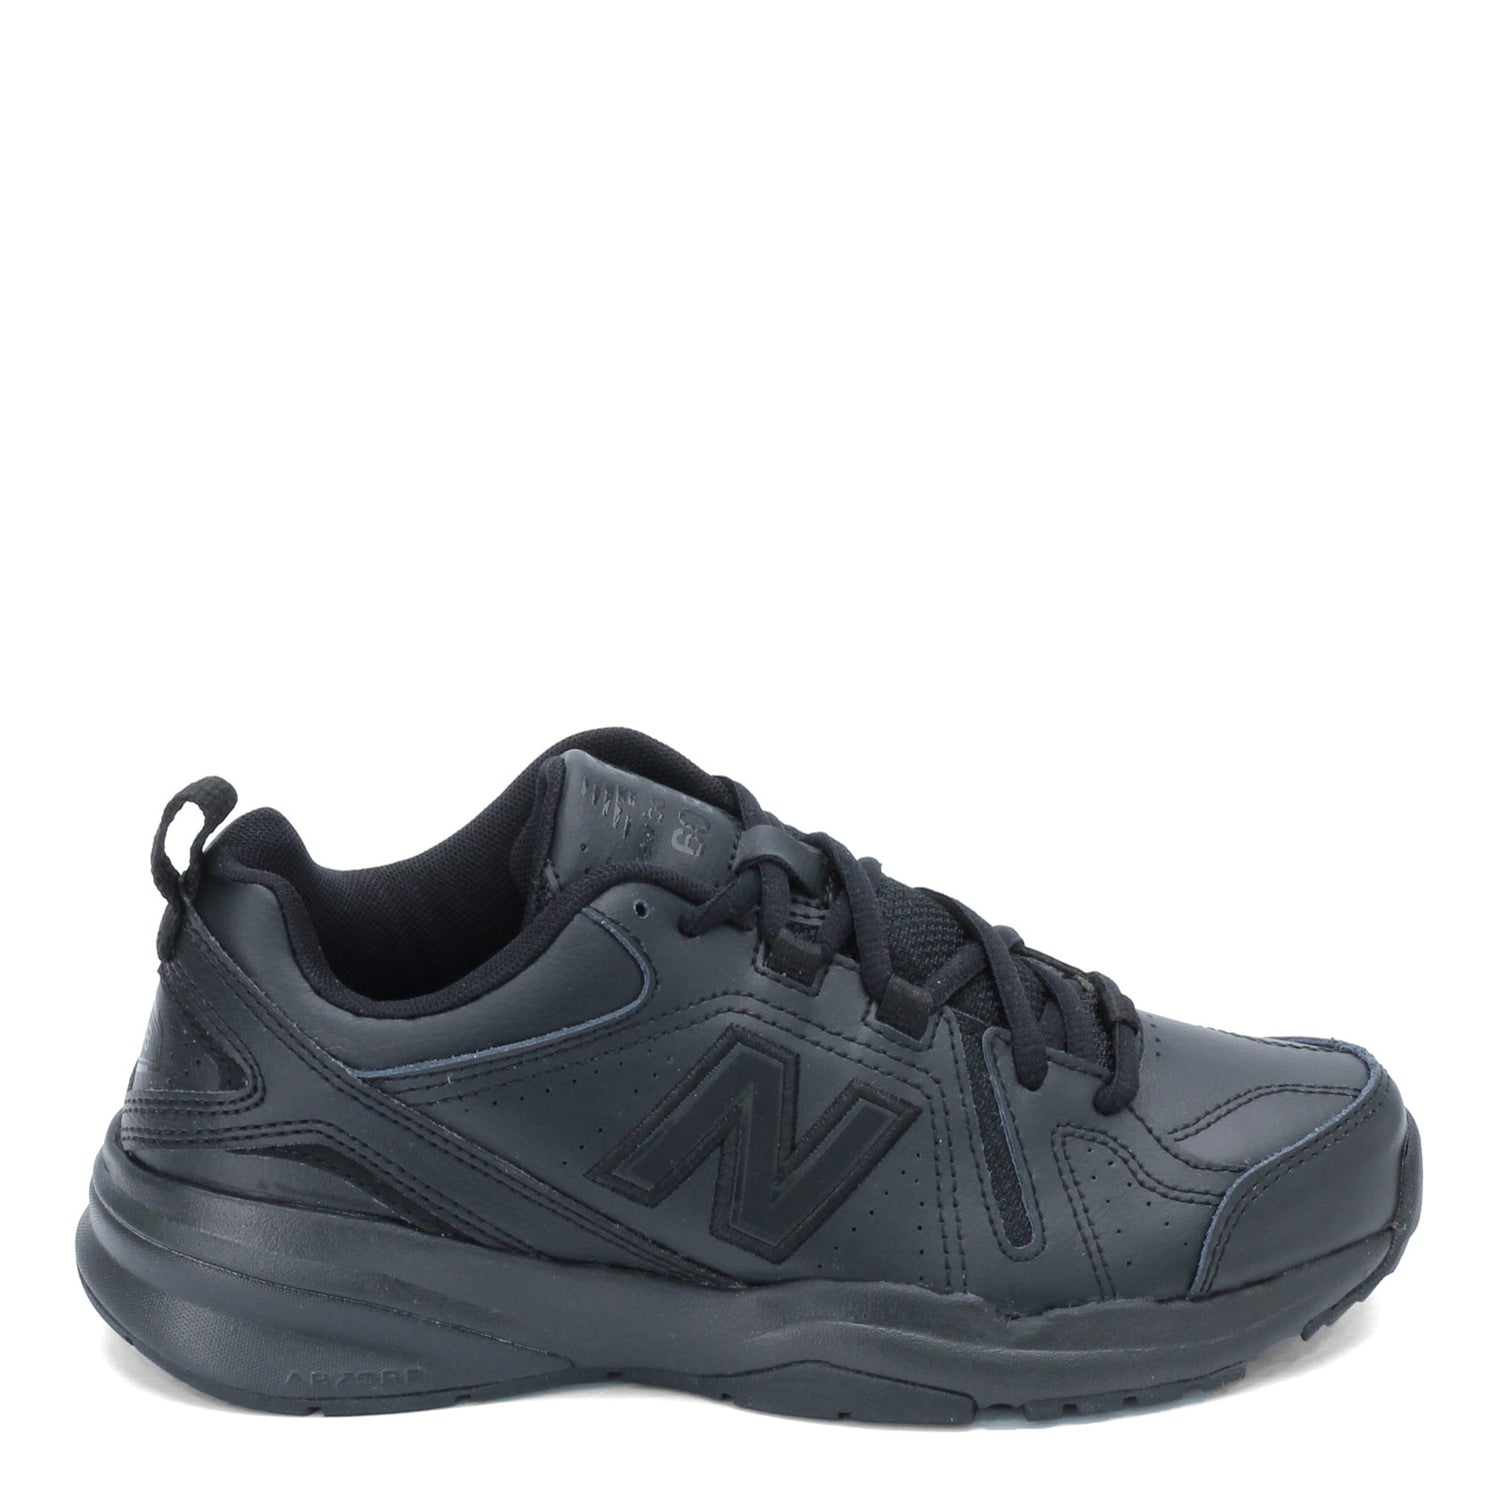 Peltz Shoes  Women's New Balance 608V5 Crosstraining Sneaker BLACK WX608AB5